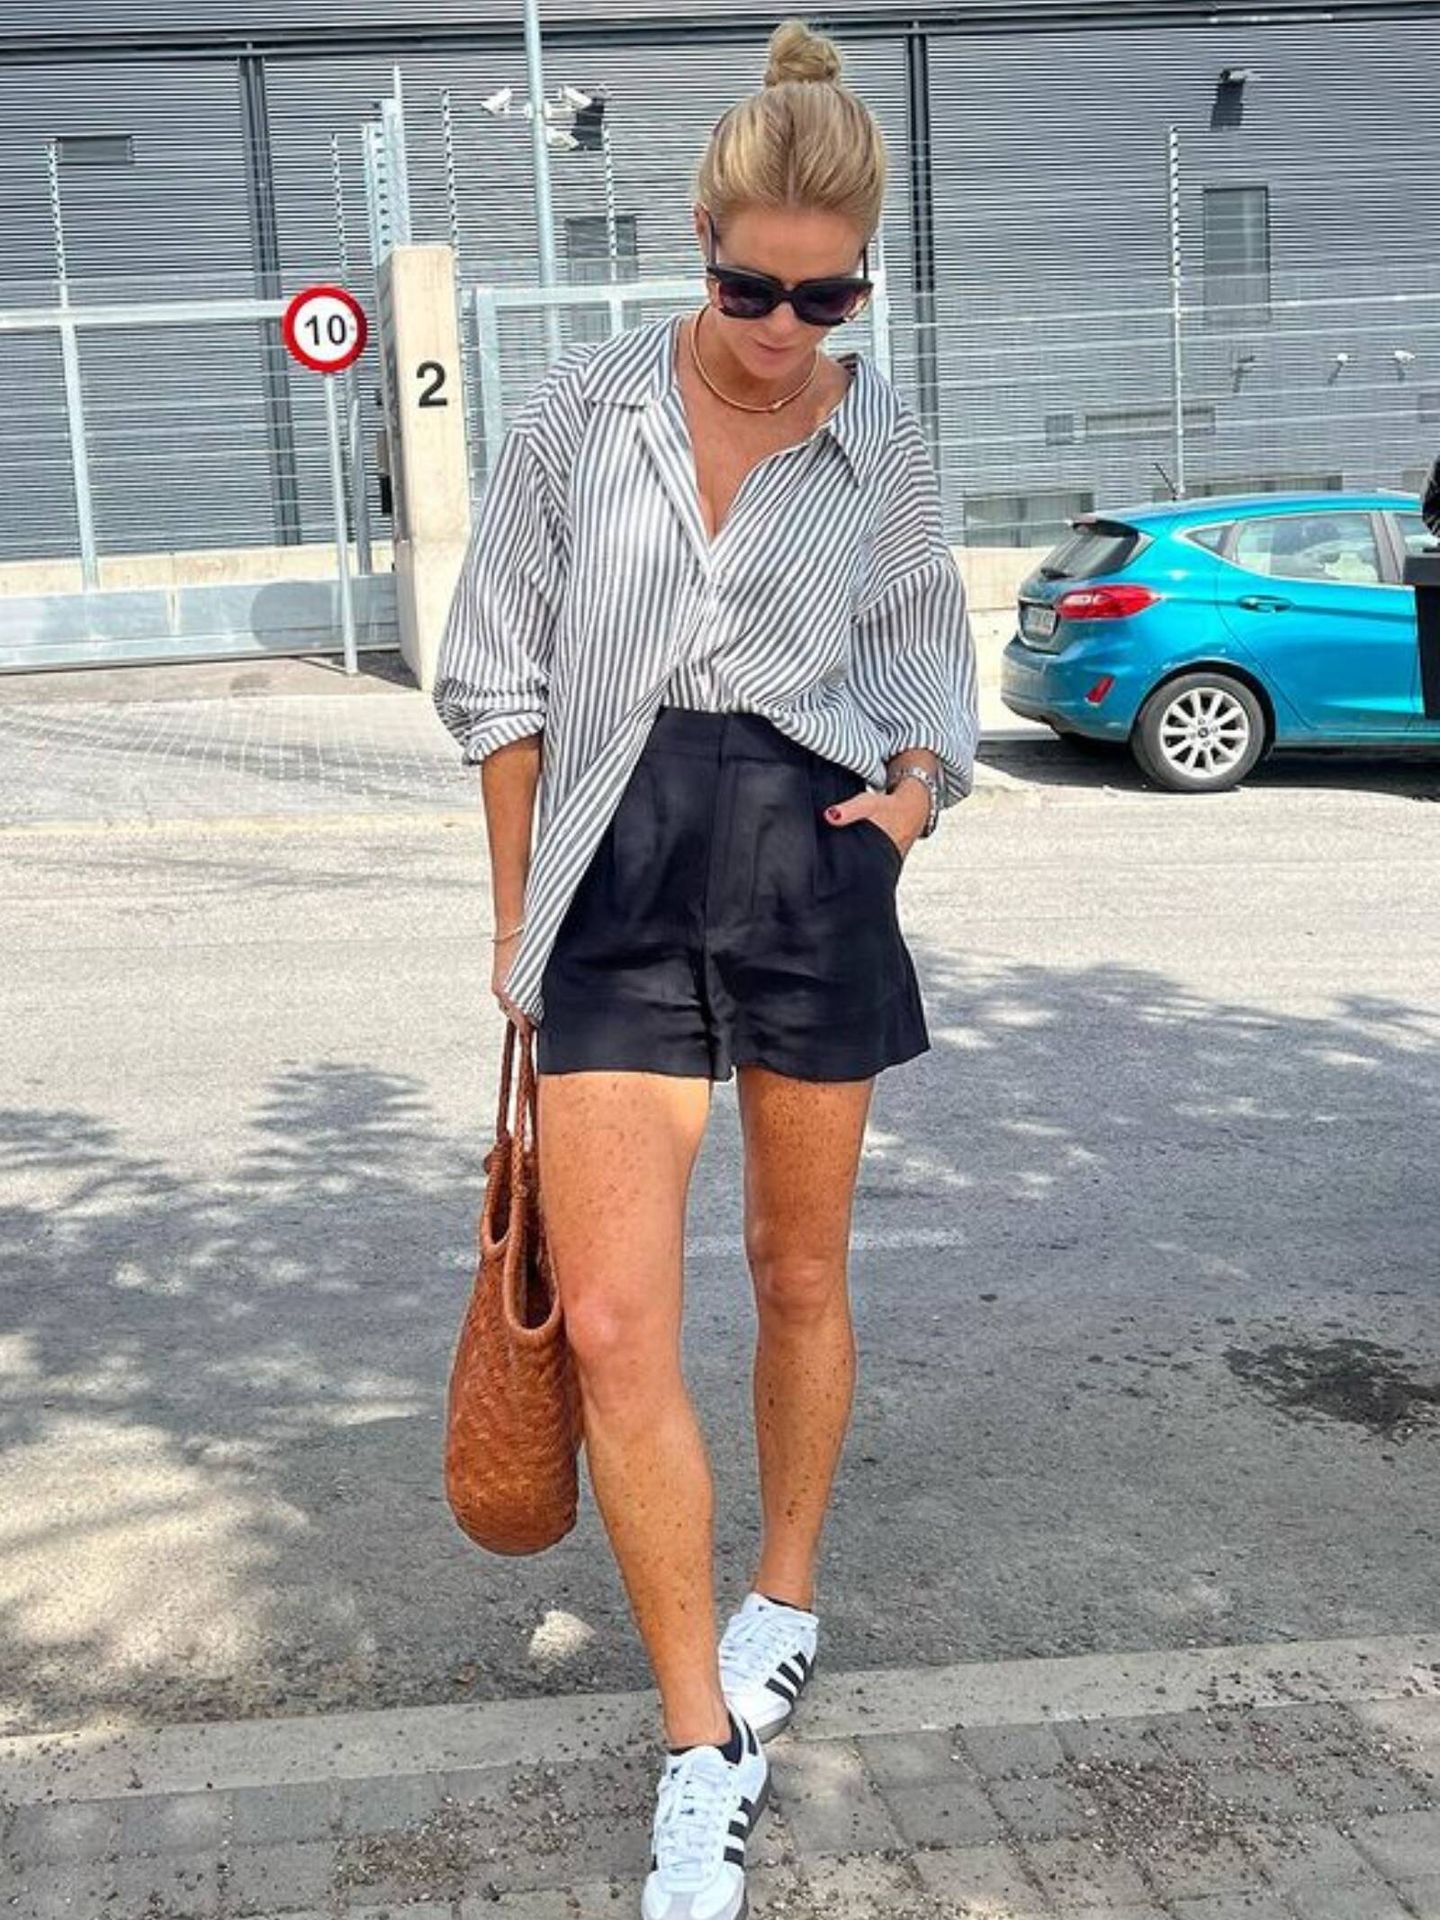 Amelia Bono vuelve a confiar en Zara para este look. (Instagram/@ameliabono)